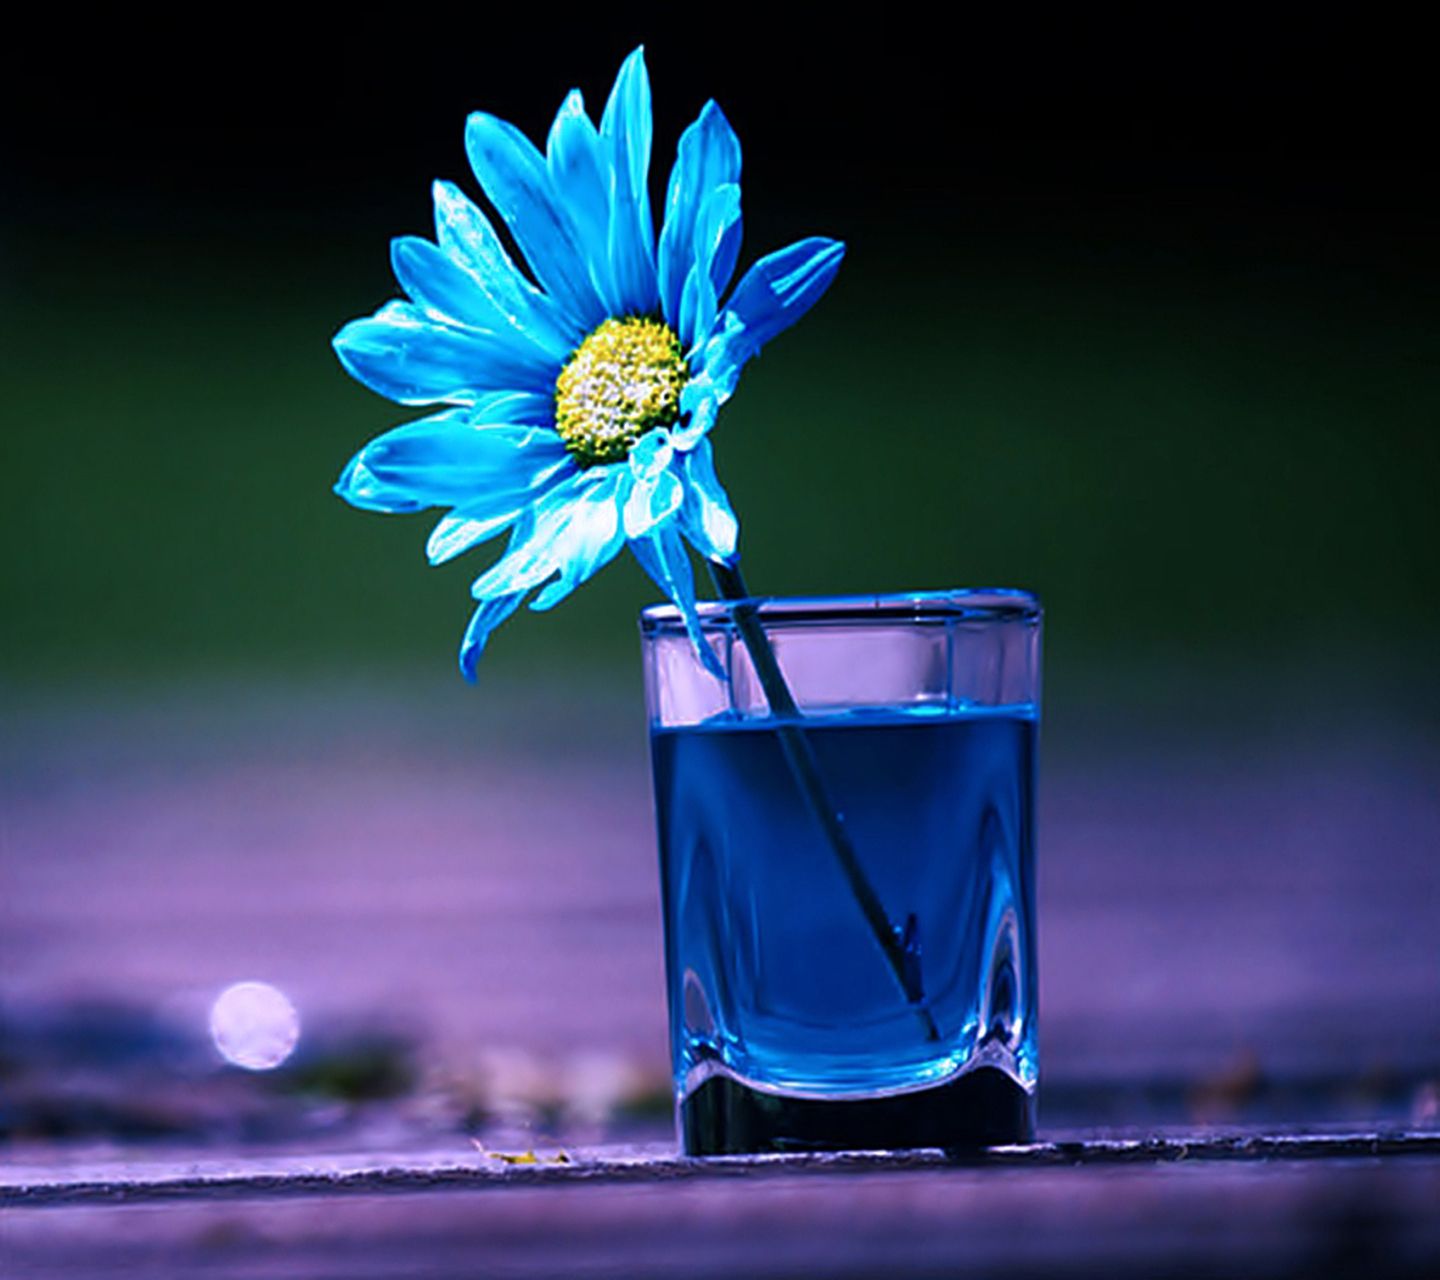 sfondi per telefoni cellulari,blu,blu cobalto,bevanda,fotografia di still life,fiore